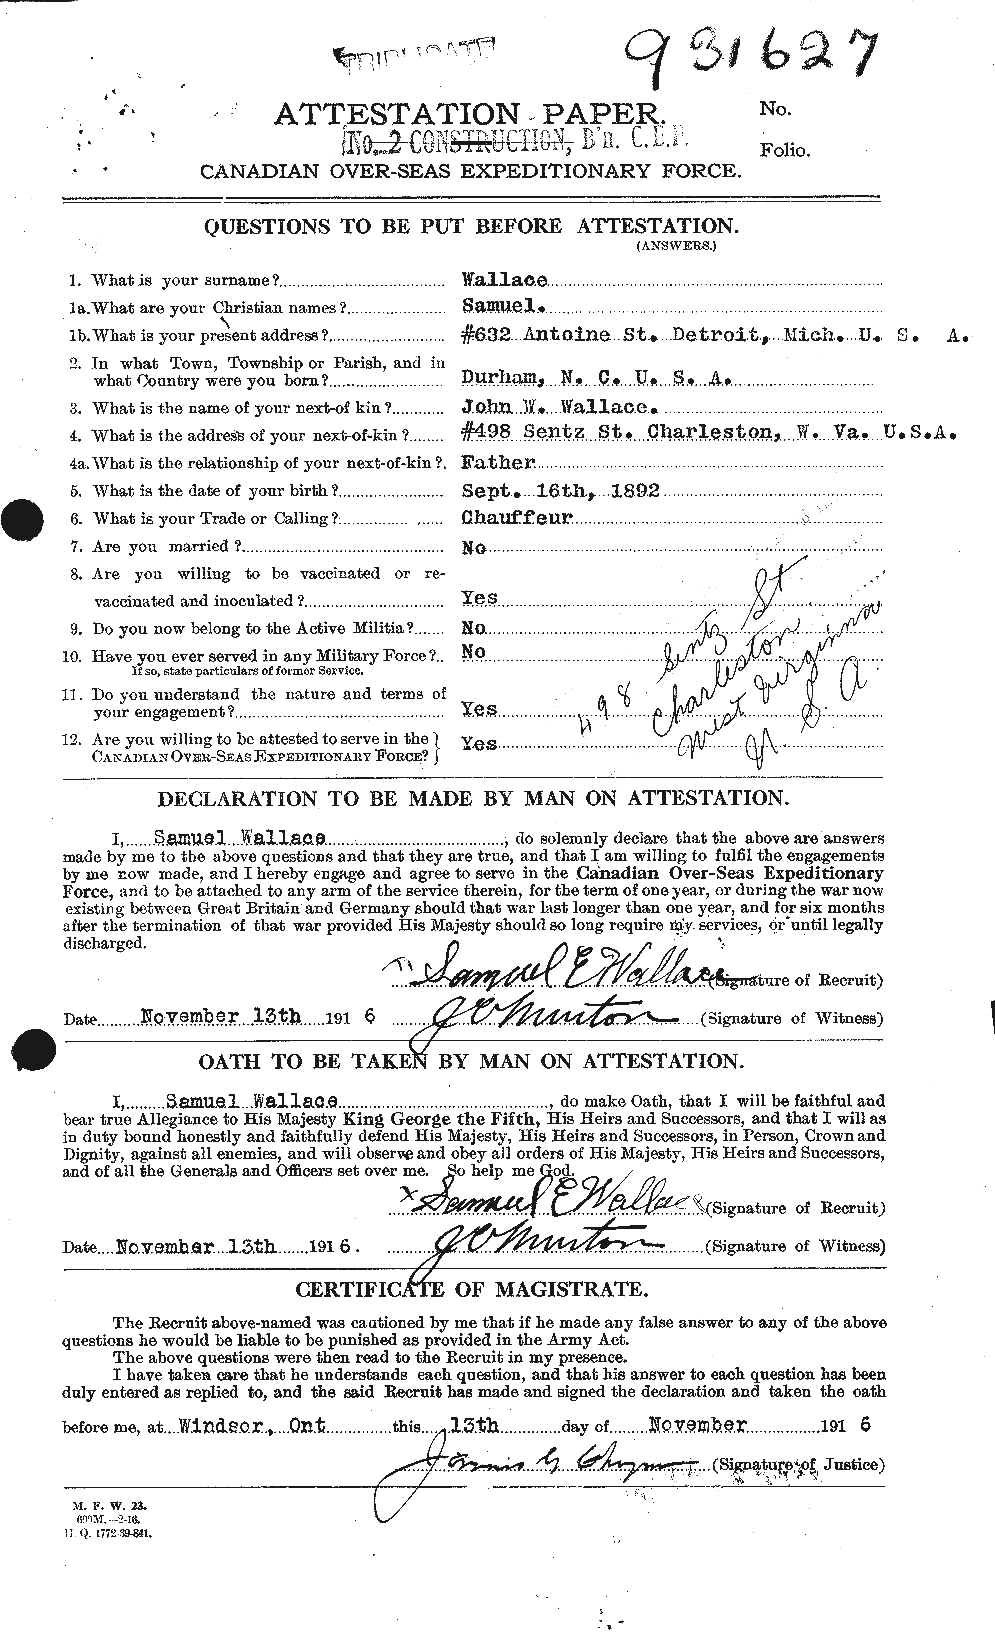 Dossiers du Personnel de la Première Guerre mondiale - CEC 654746a